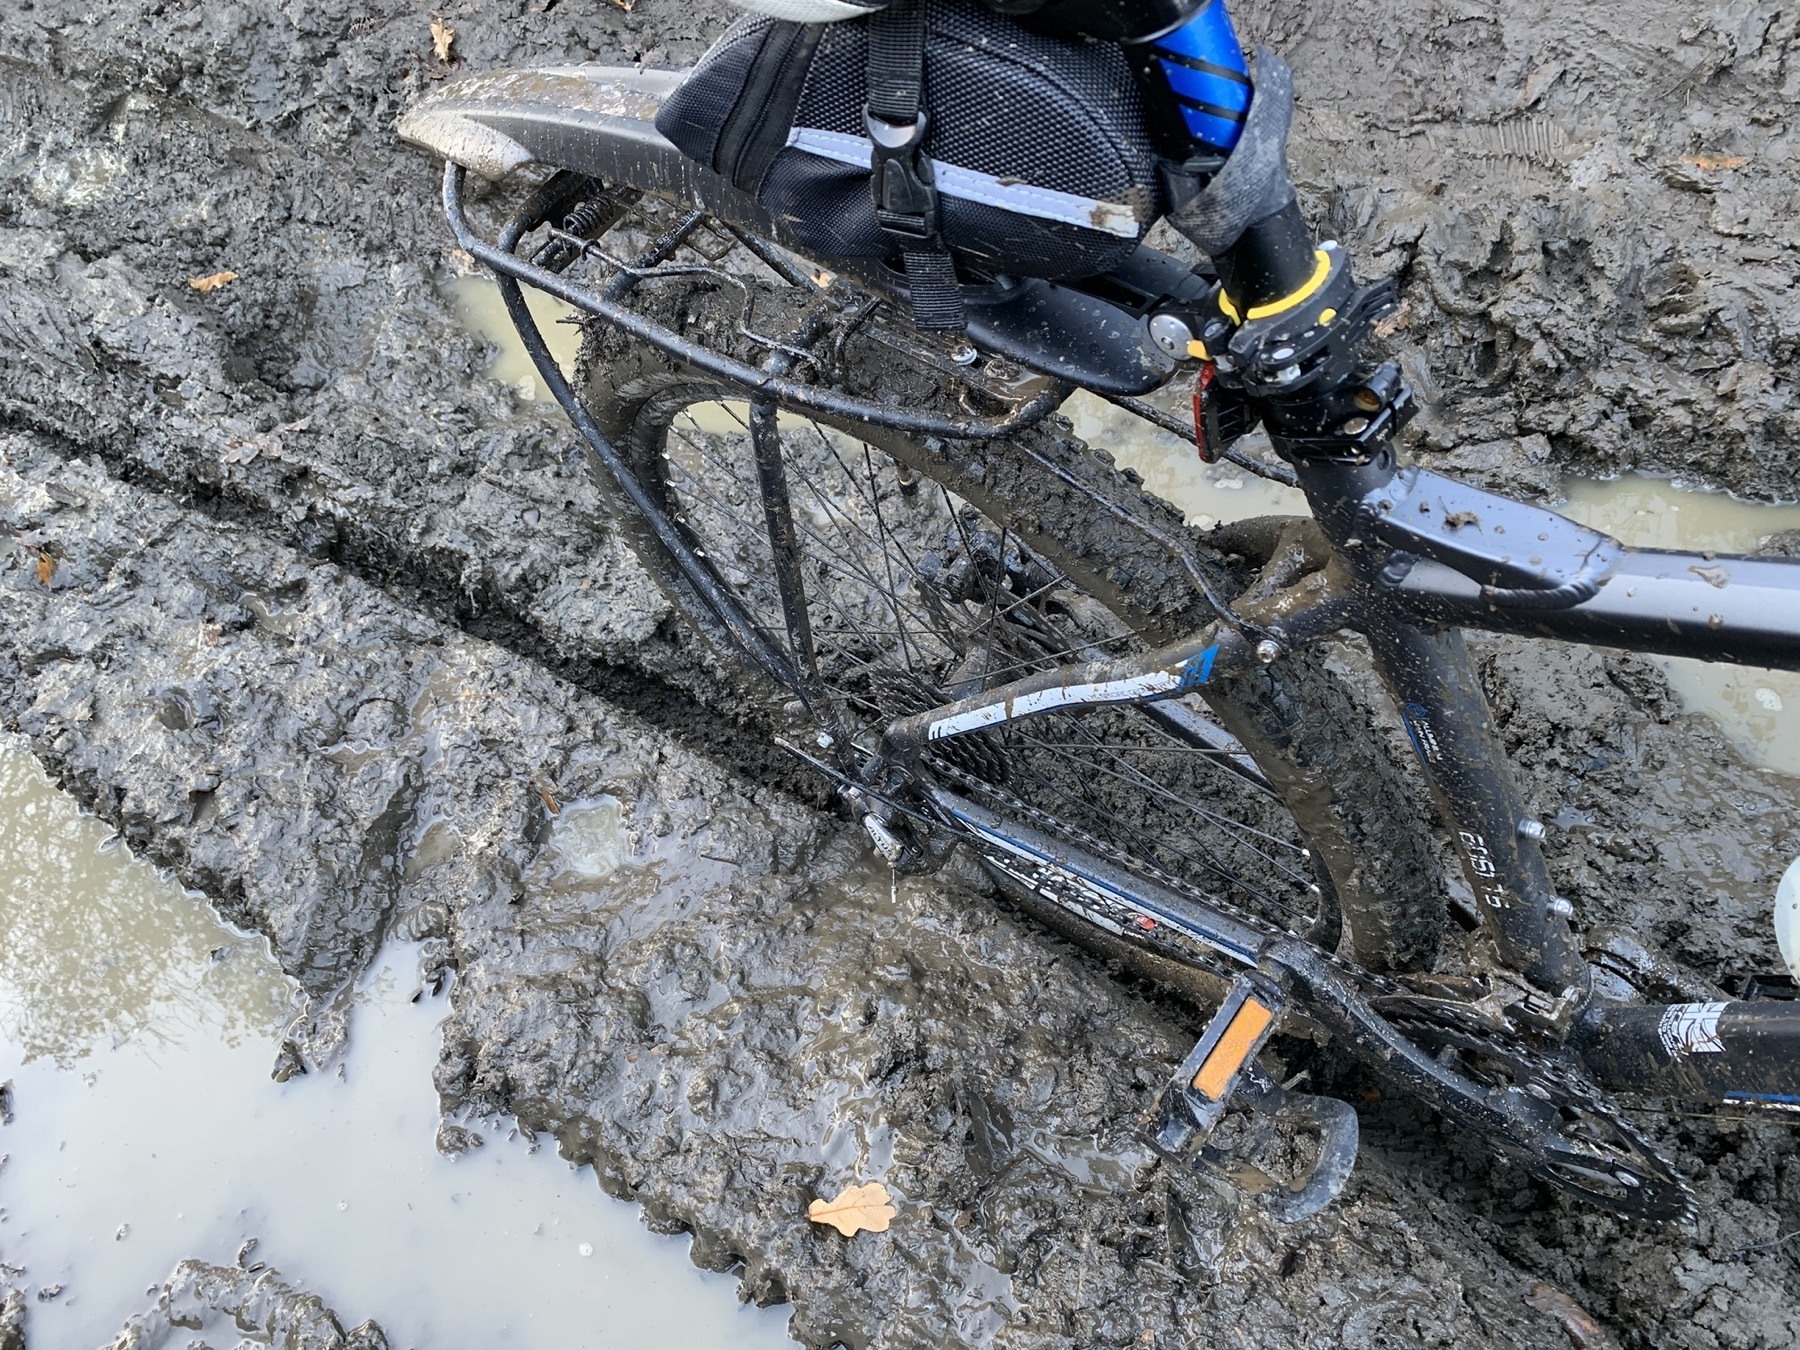 Mountain Bike stuck in the mud